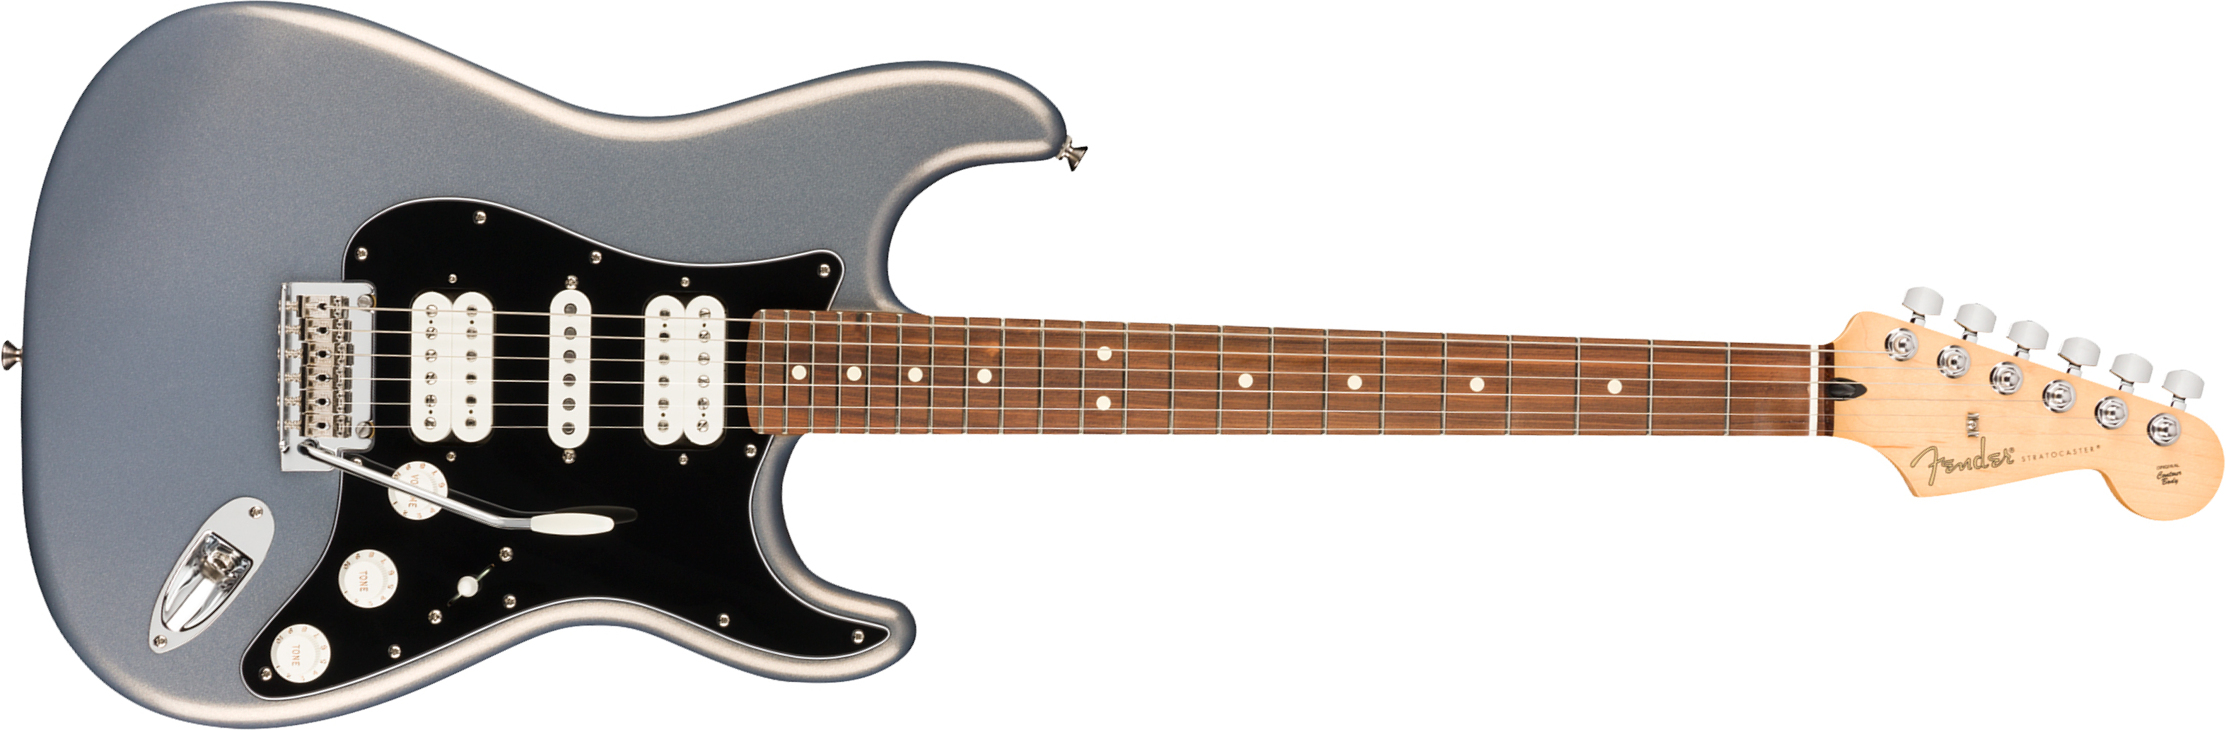 Fender Strat Player Mex Hsh Pf - Silver - Elektrische gitaar in Str-vorm - Main picture